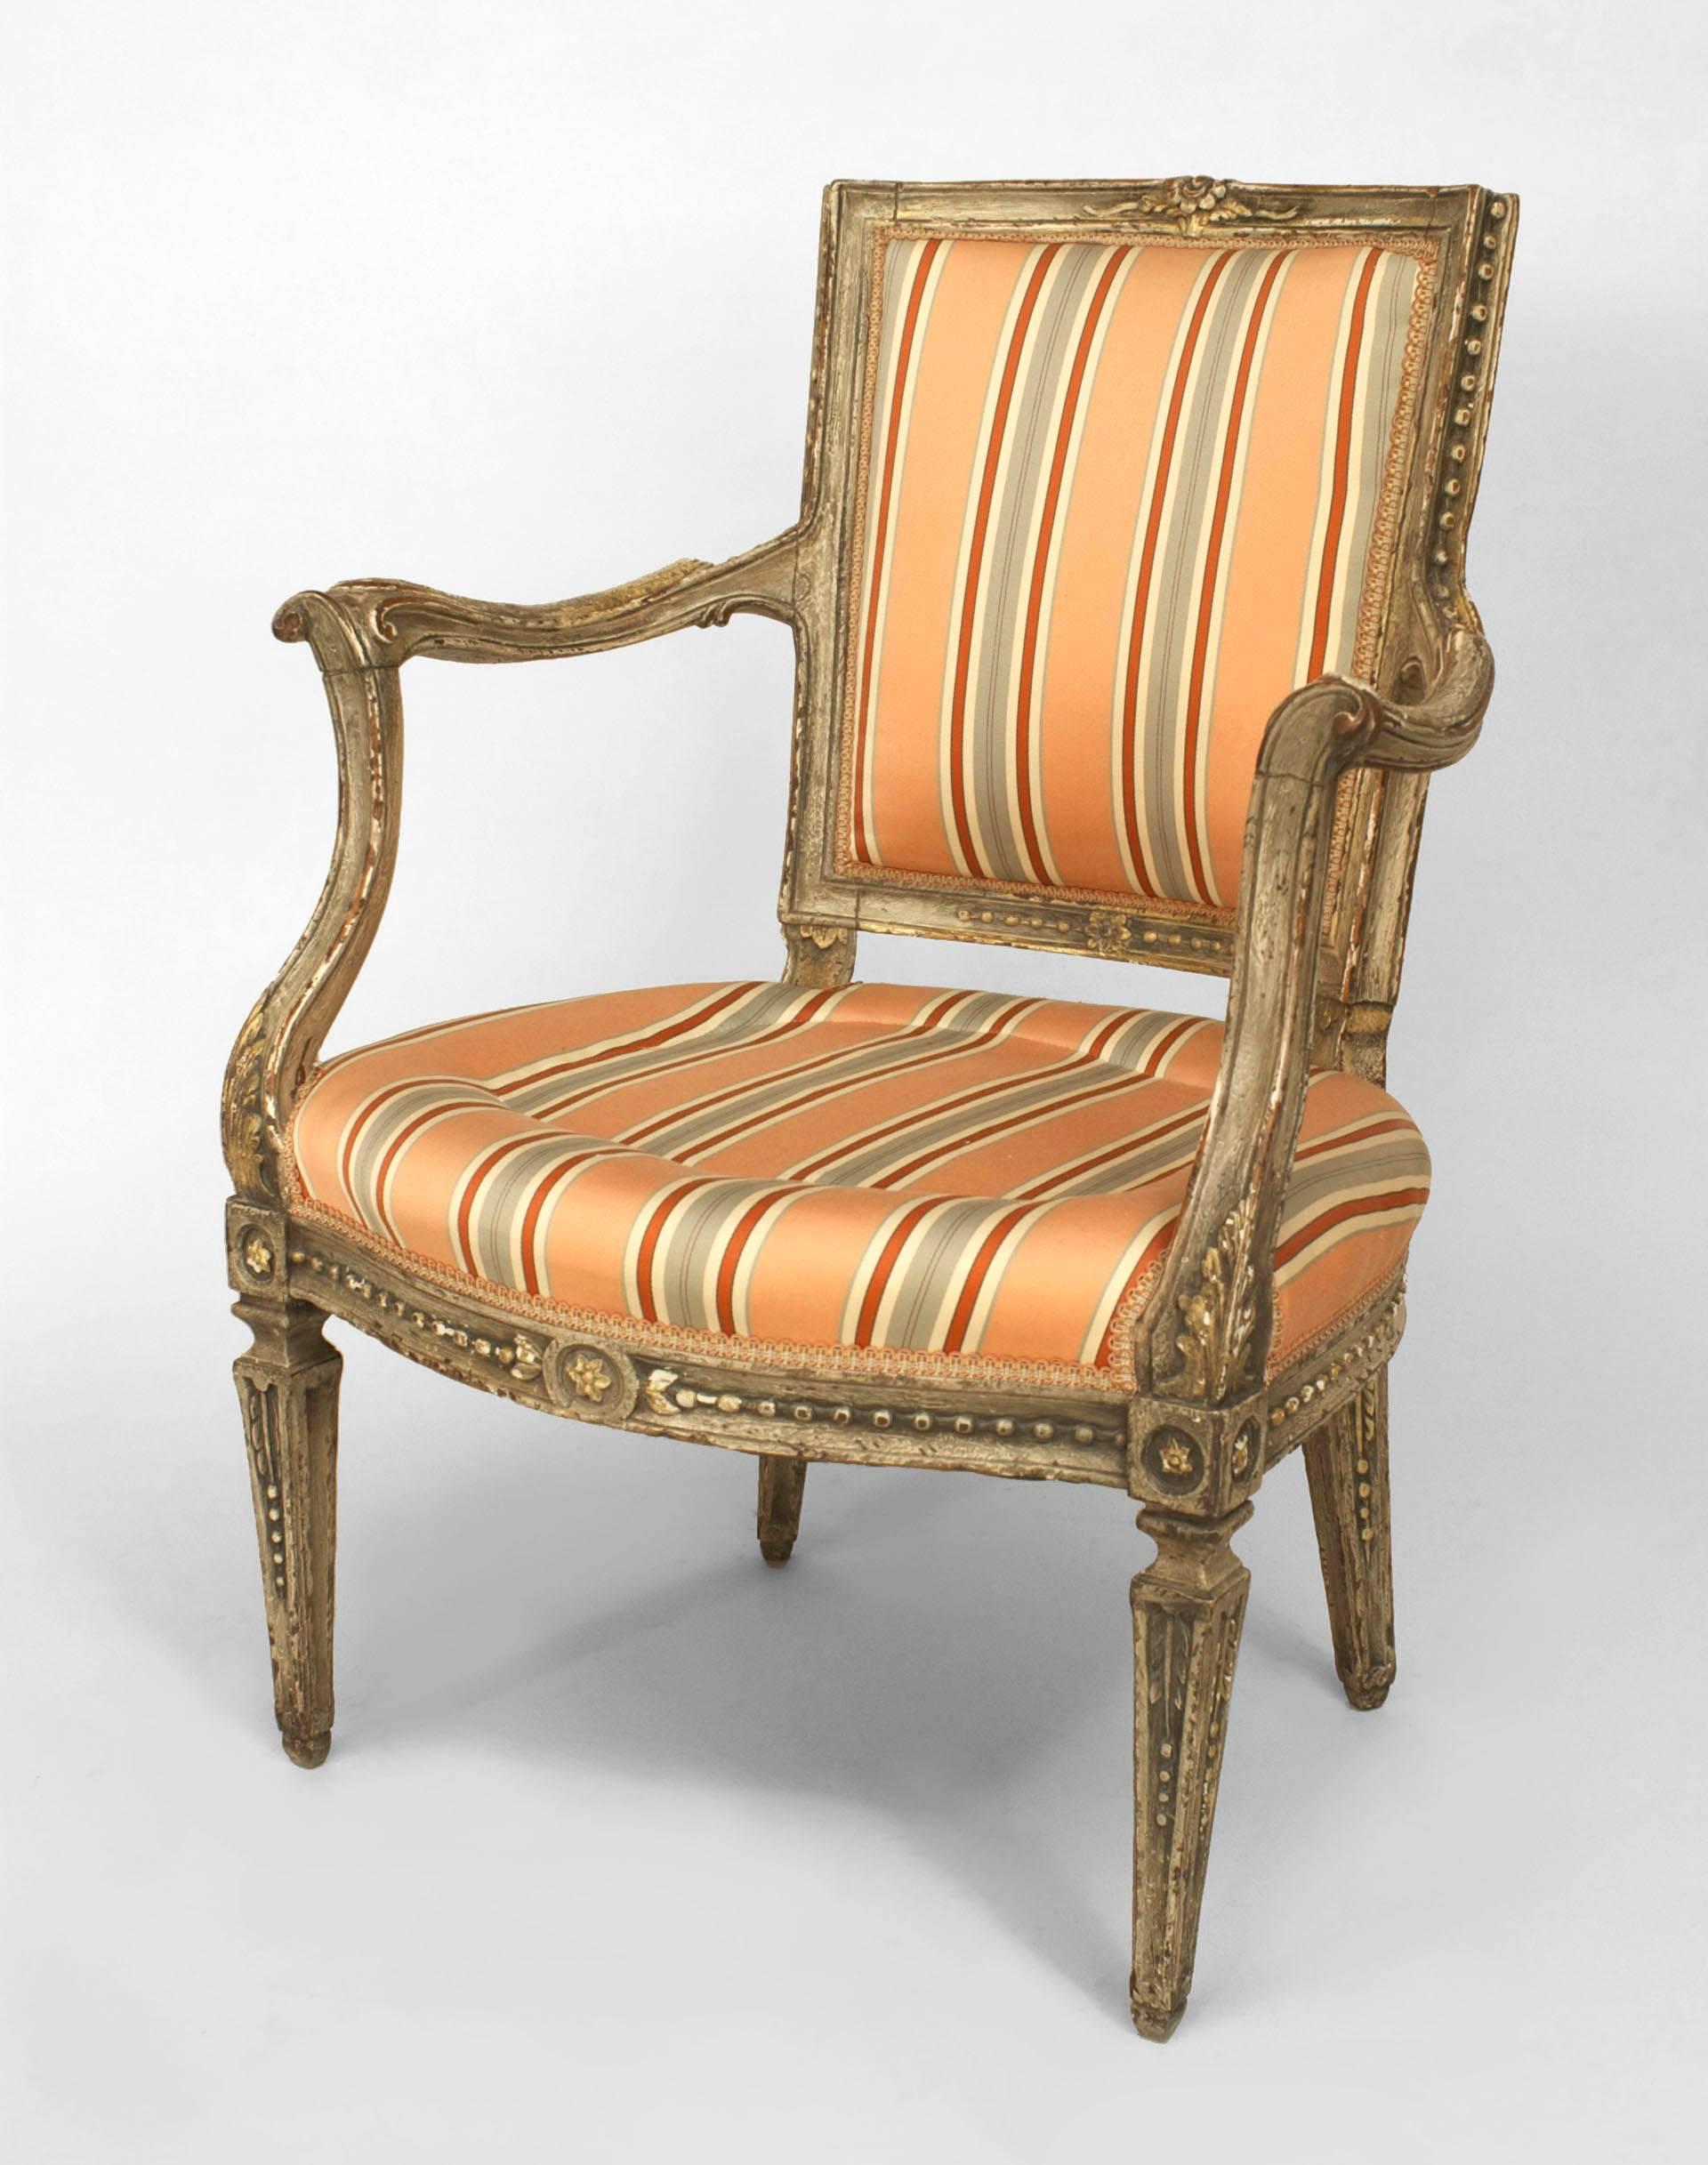 Italienischer neoklassizistischer (18. Jh.) piemontesischer, grau lackierter offener Sessel mit geschnitzten Armlehnen und viereckigen, konisch zulaufenden Beinen, bezogen mit rosa Streifendamast
